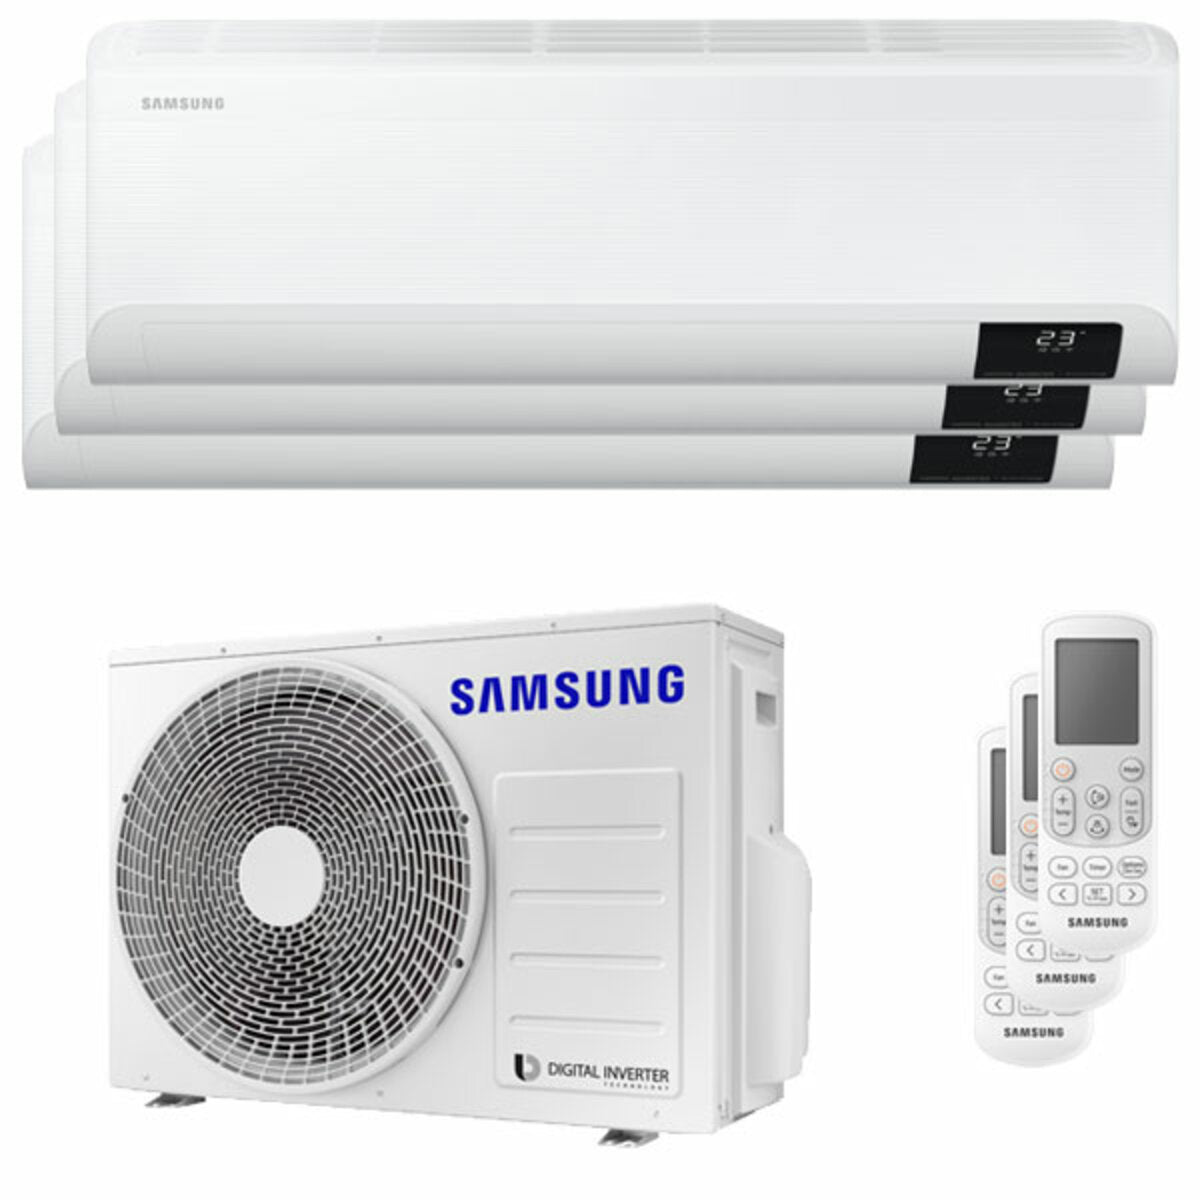 Samsung Cebu Wi-Fi Trial Split Klimaanlage 7000 + 7000 + 12000 BTU Wechselrichter A++ WLAN Außengerät 5,2 kW